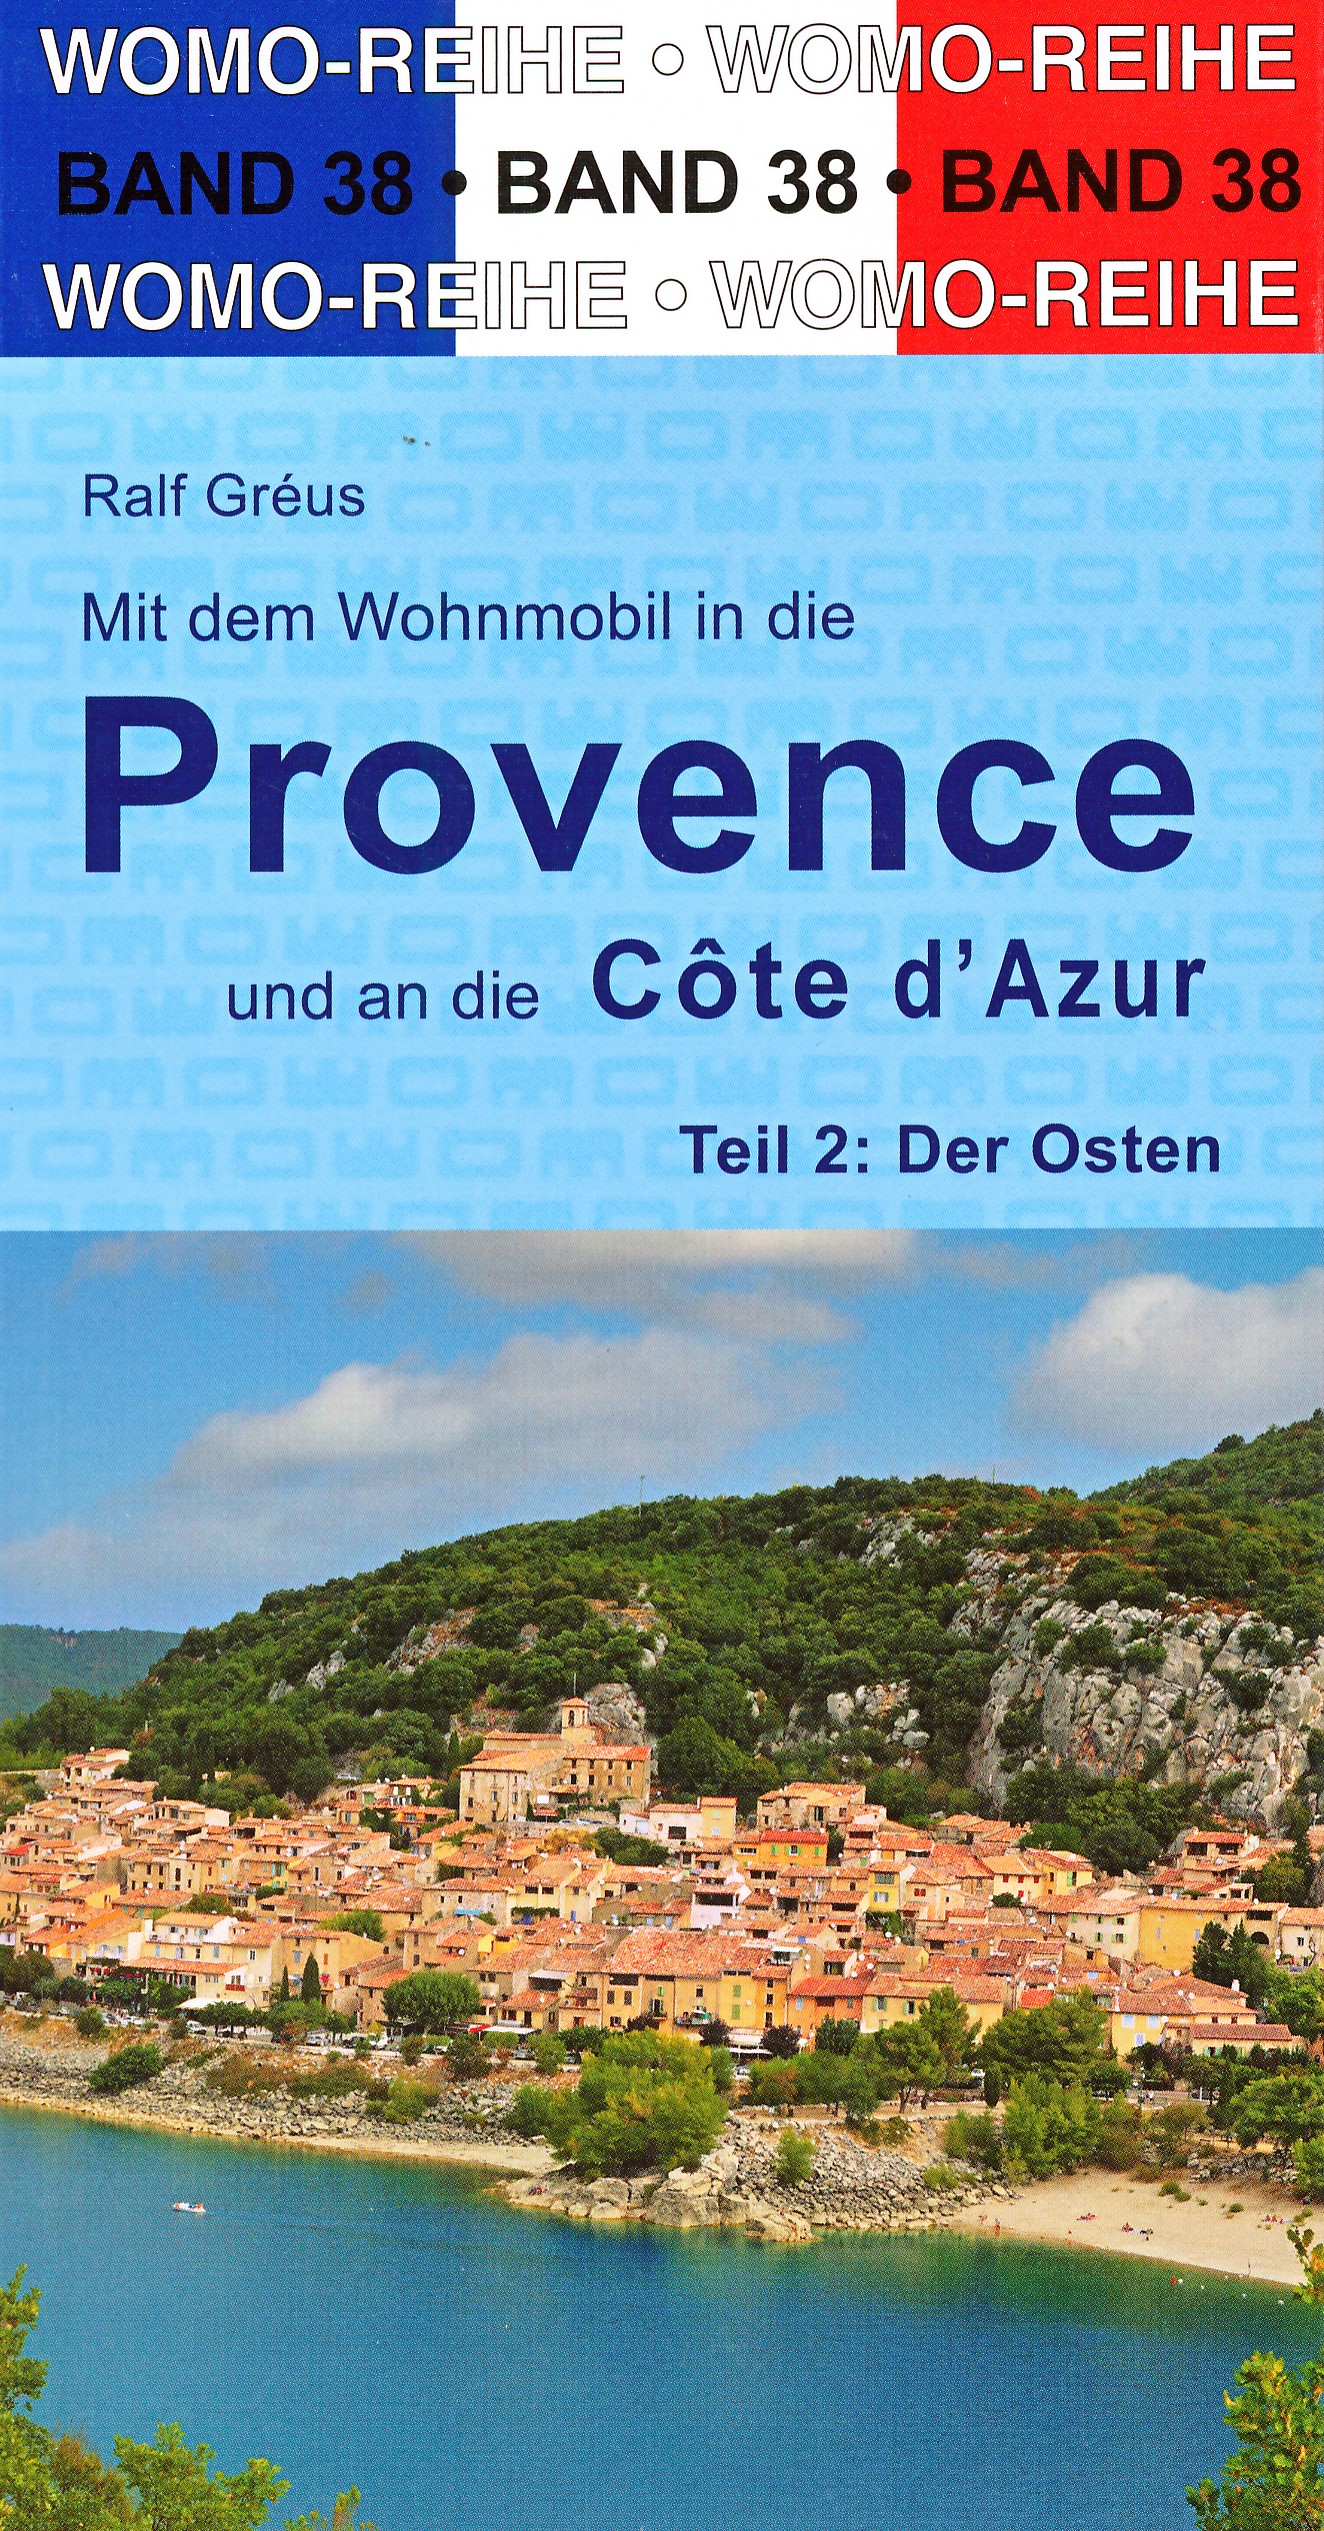 Online bestellen: Campergids 38 Mit dem Wohnmobil in die Provence - Côte d' Azur (Ost) | WOMO verlag